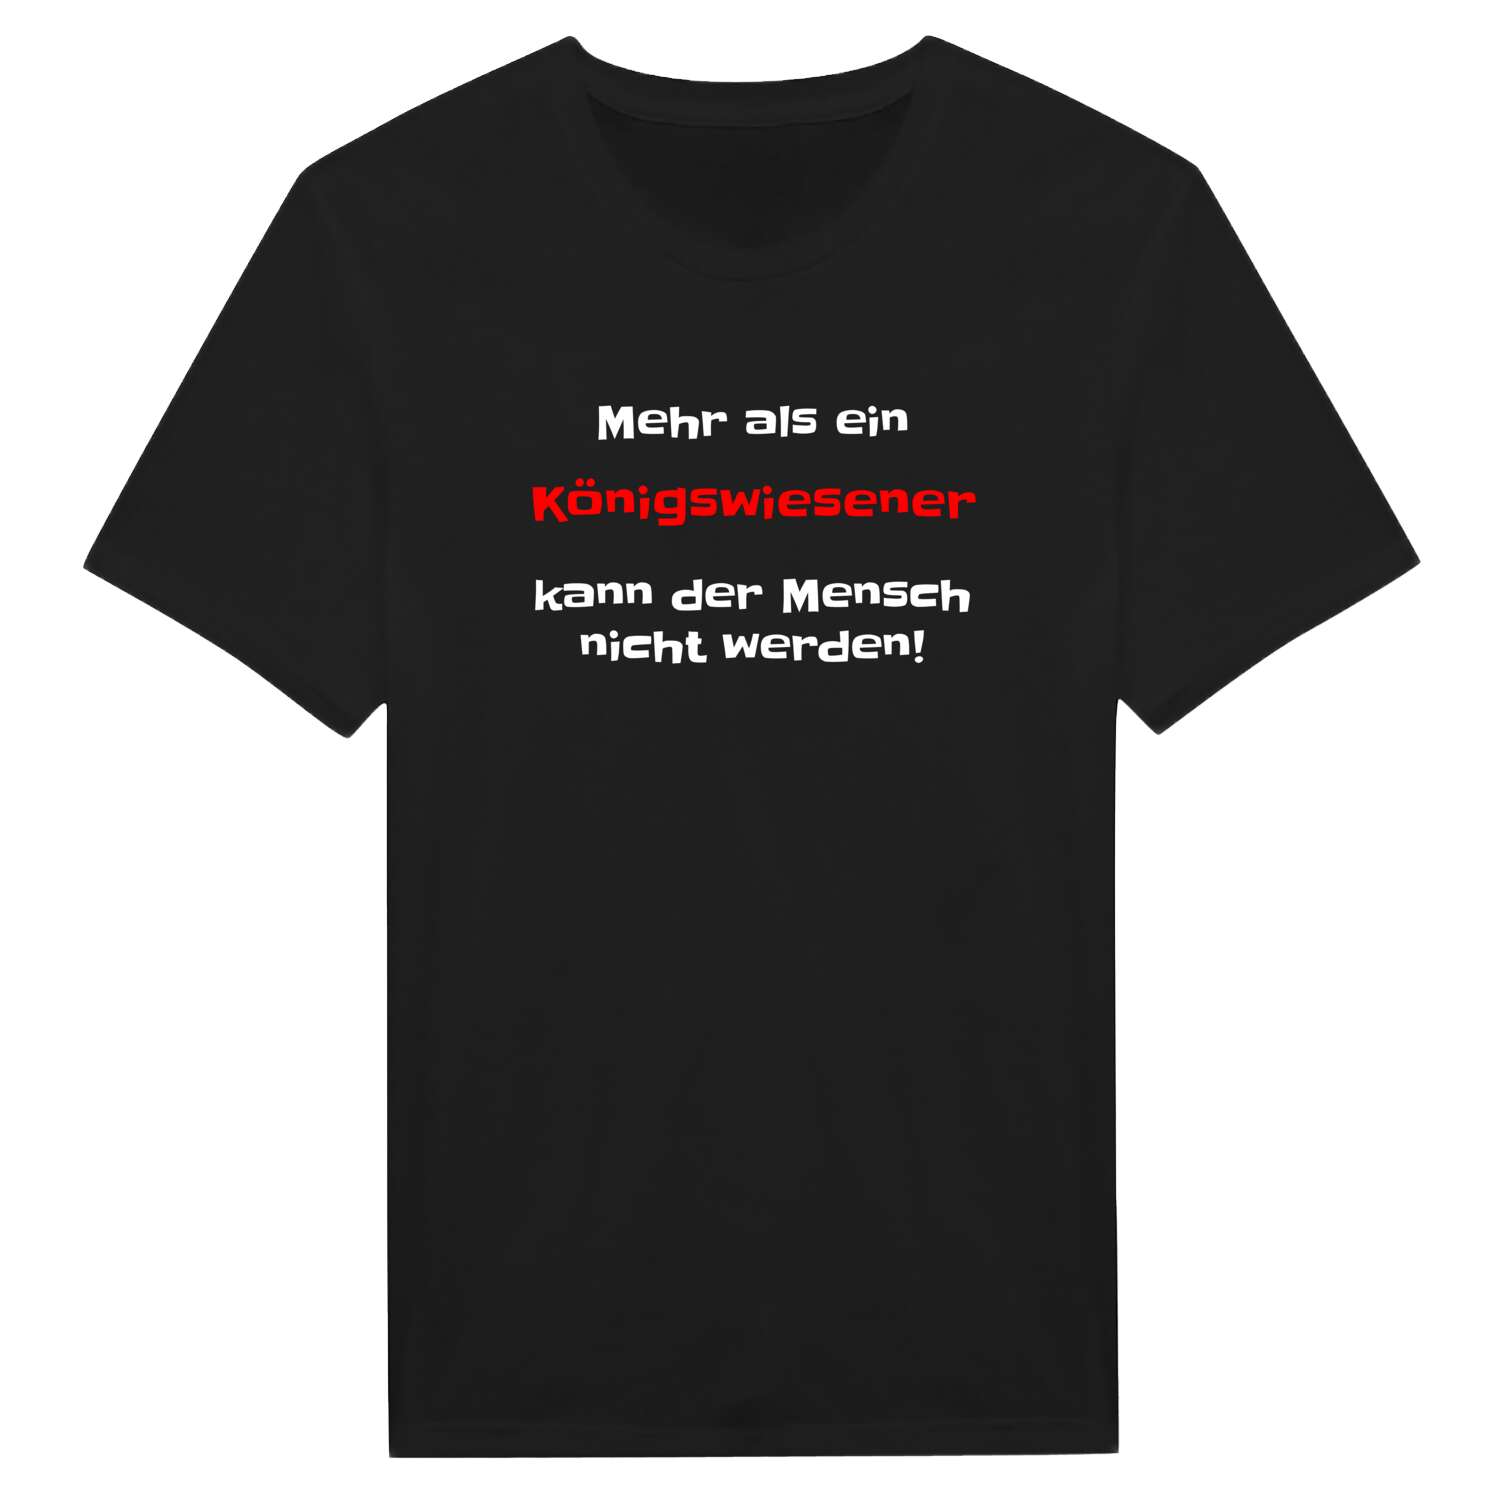 Königswiese T-Shirt »Mehr als ein«